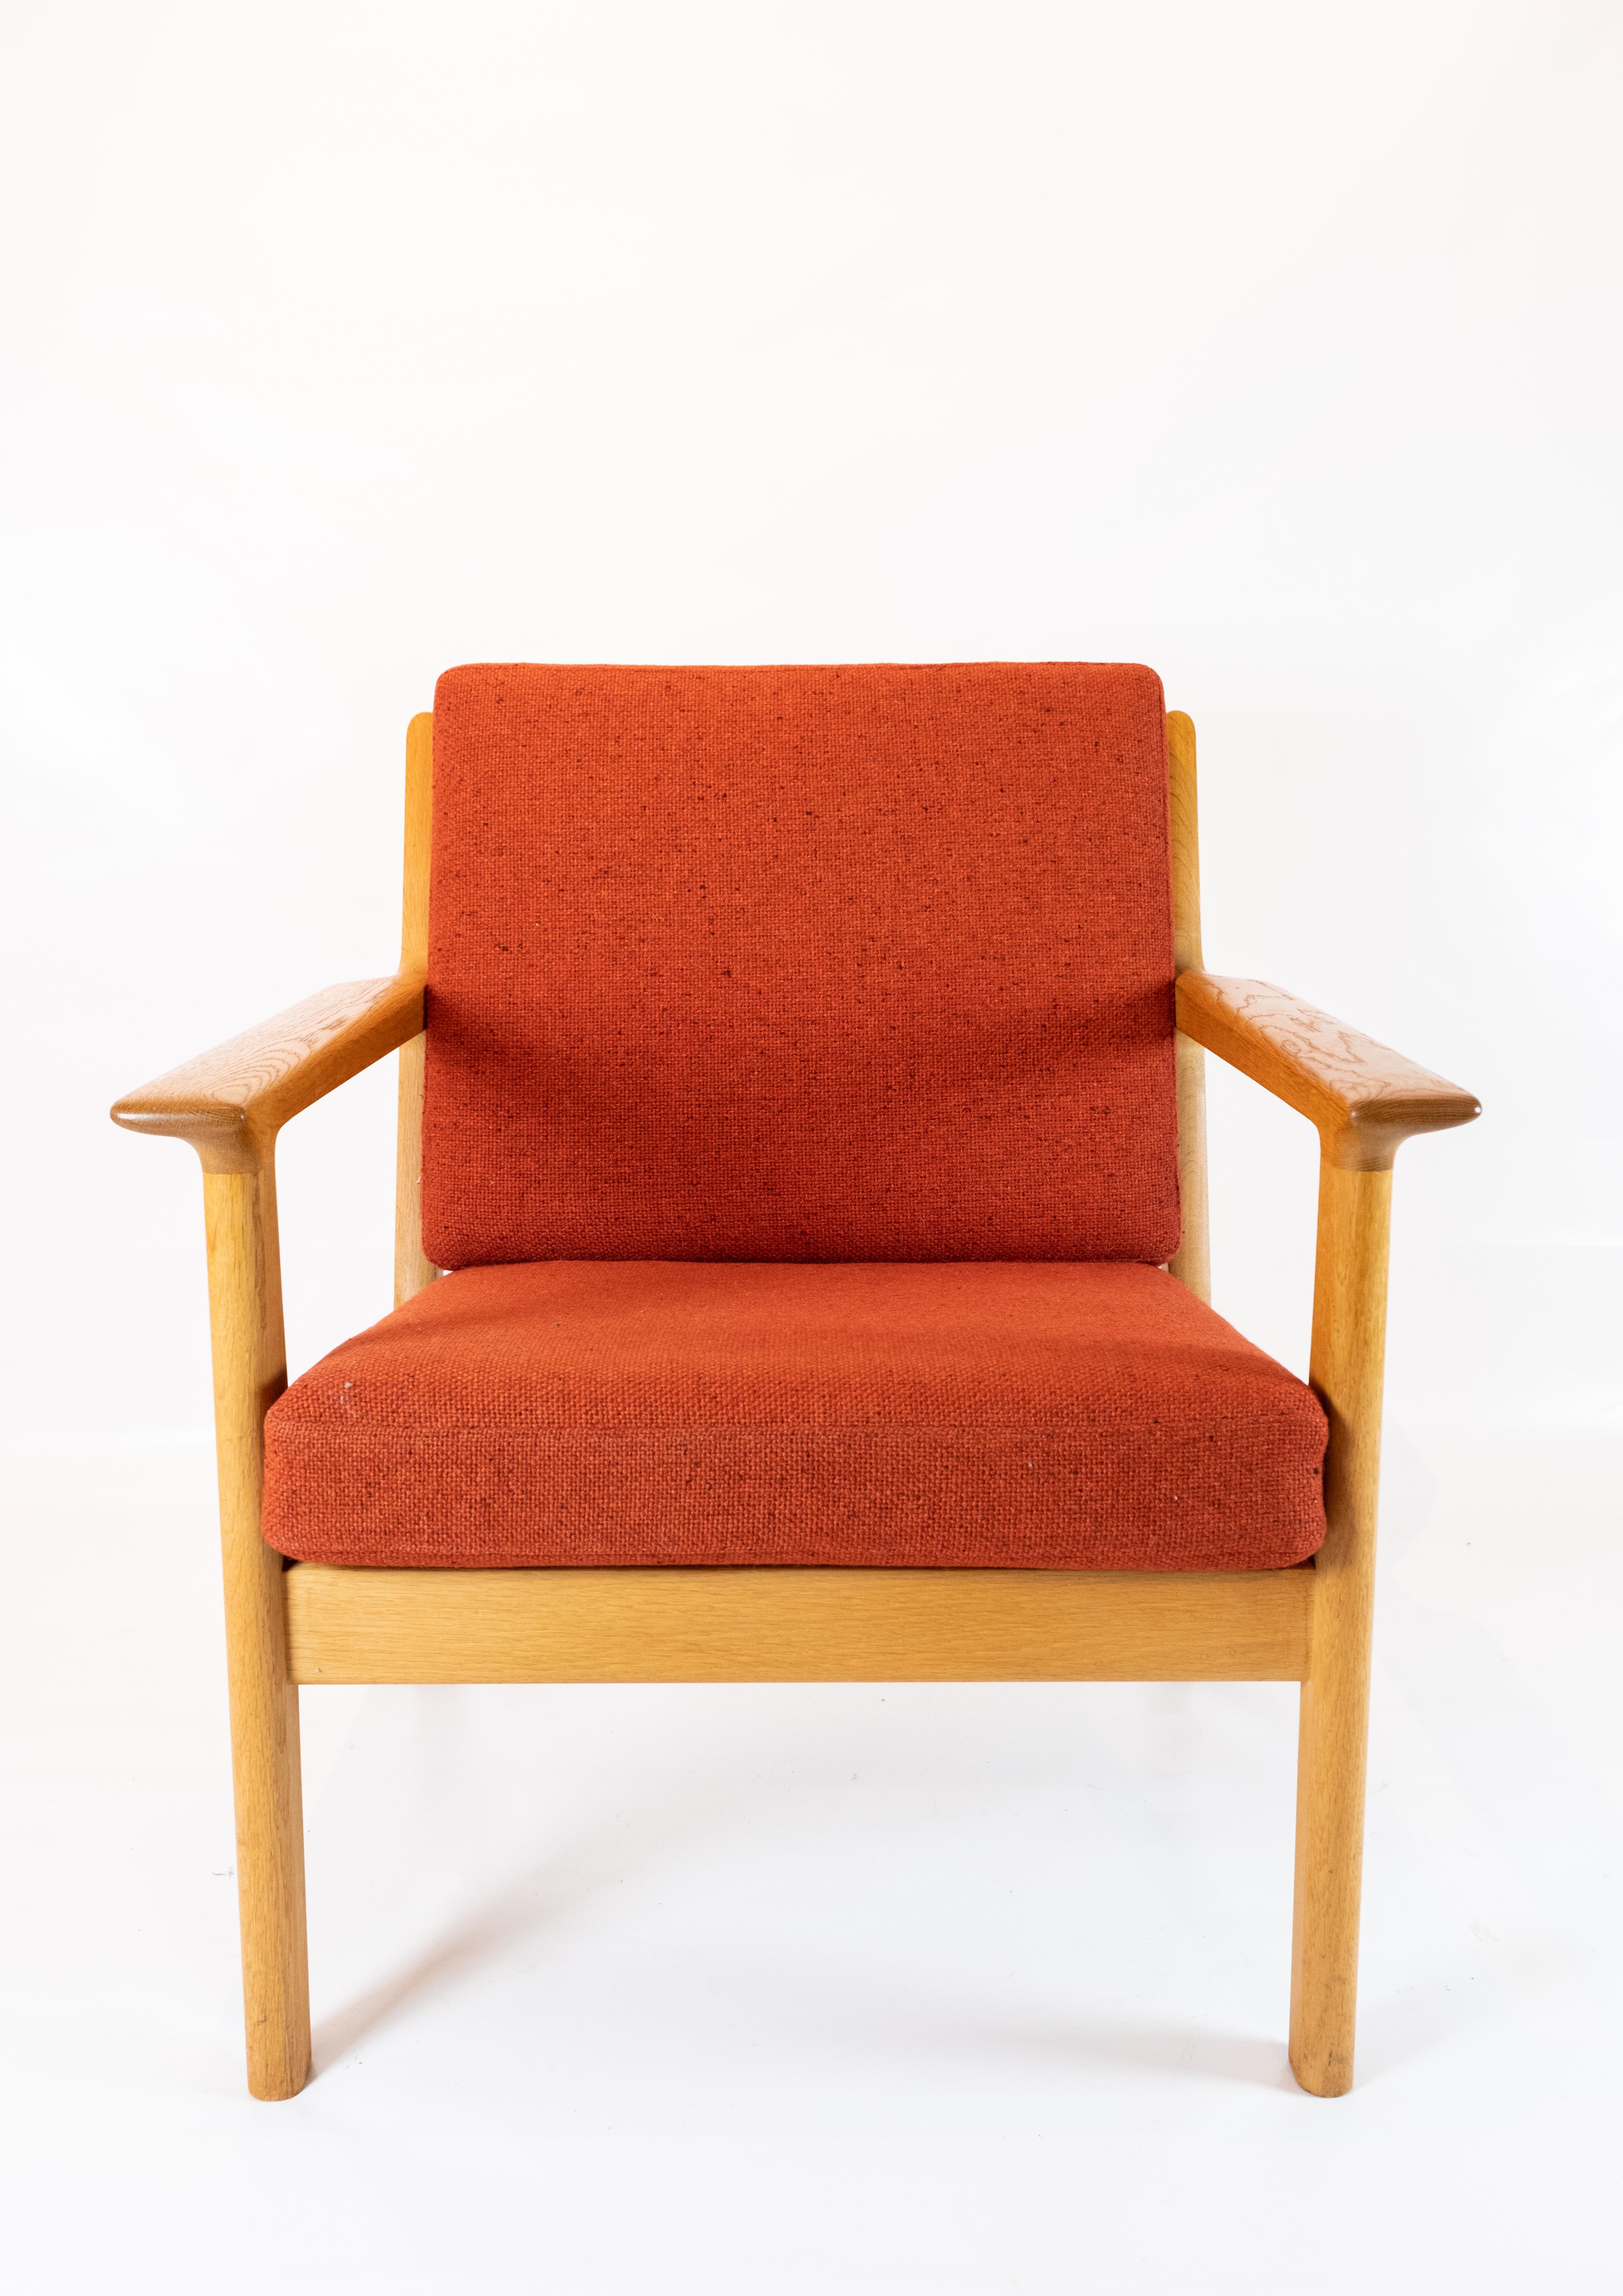 Ce fauteuil, conçu par l'emblématique Hans J. Wegner et fabriqué par GETAMA dans les années 1960, incarne l'attrait intemporel du design scandinave. Fabriqué en chêne massif et revêtu d'un tissu de laine rouge saisissant, il allie harmonieusement